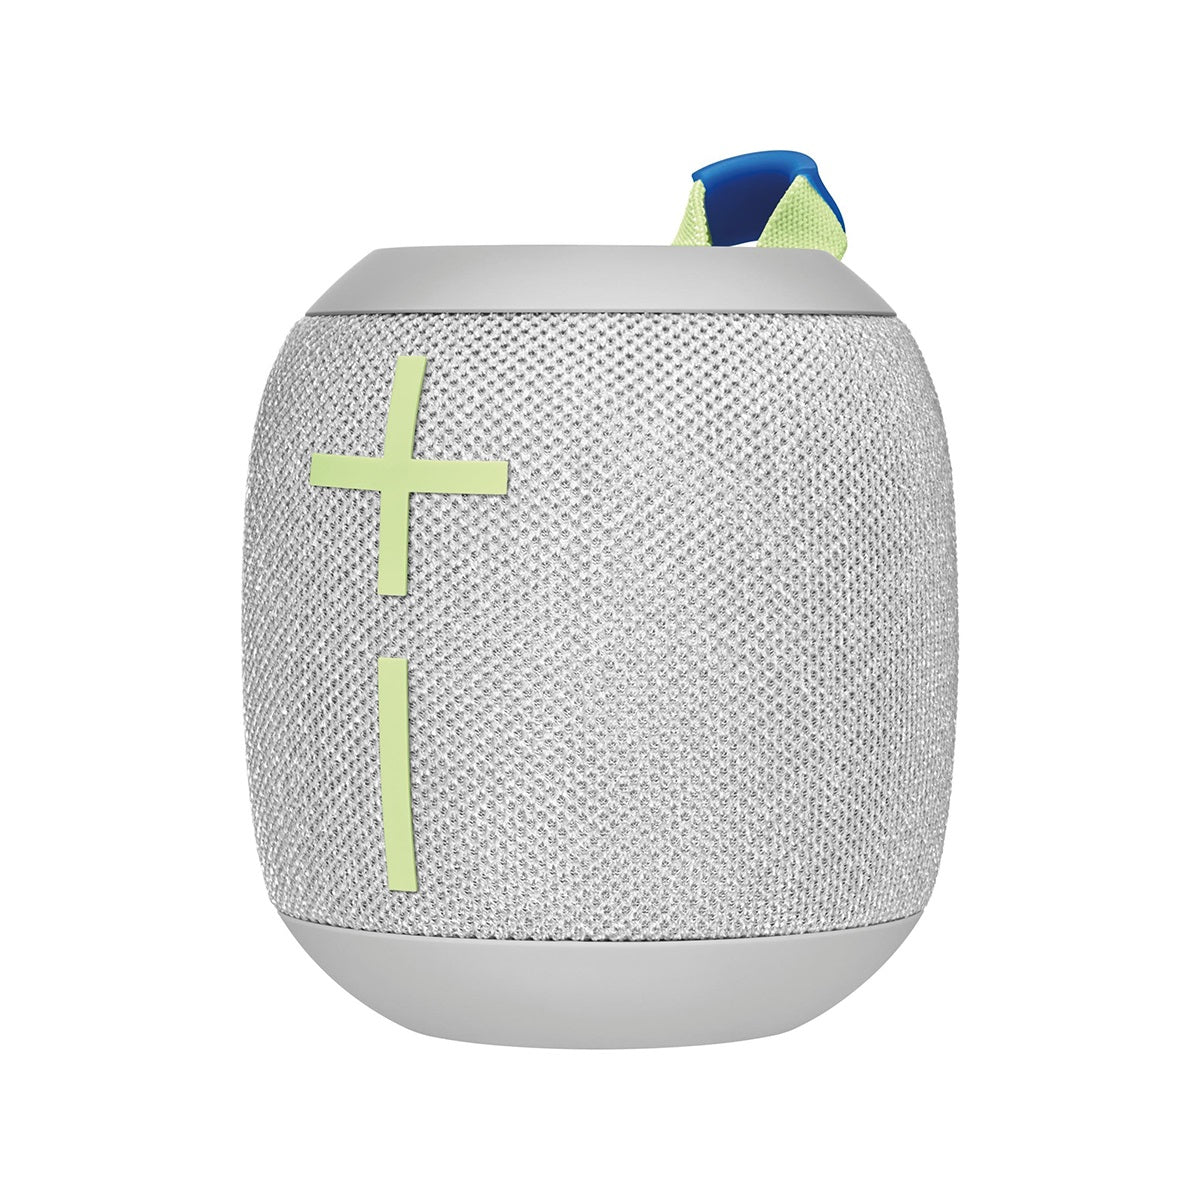 UE WONDERBOOM 3  Bluetooth Speaker - Joyous Brights Grey